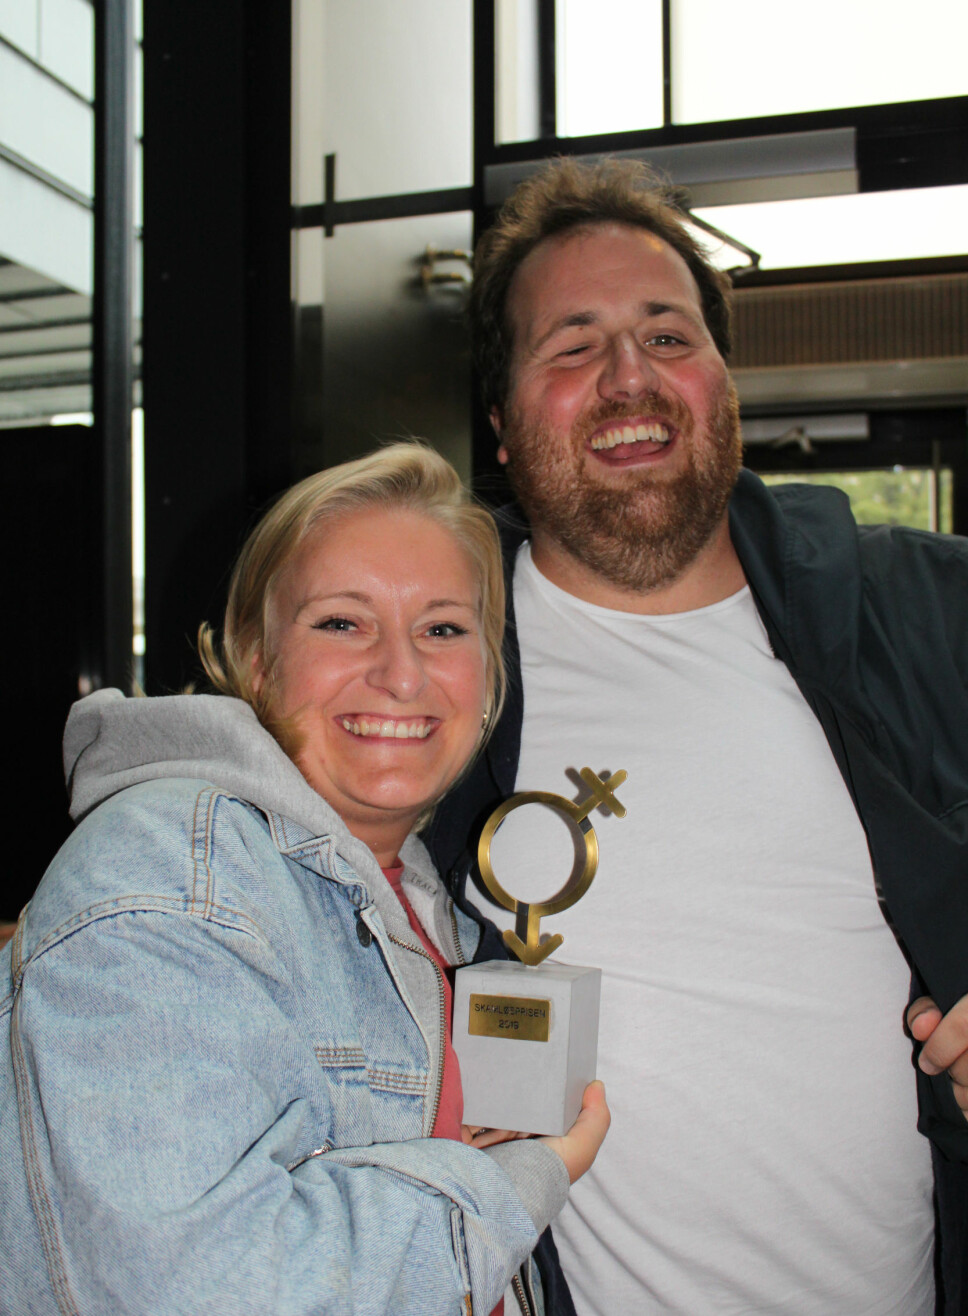 FORLOVET: Tuva Fellman vant Skamløsprisen 2019. Her avbildet sammen med forloveden og P3-programleder Ronny Brede Aase.